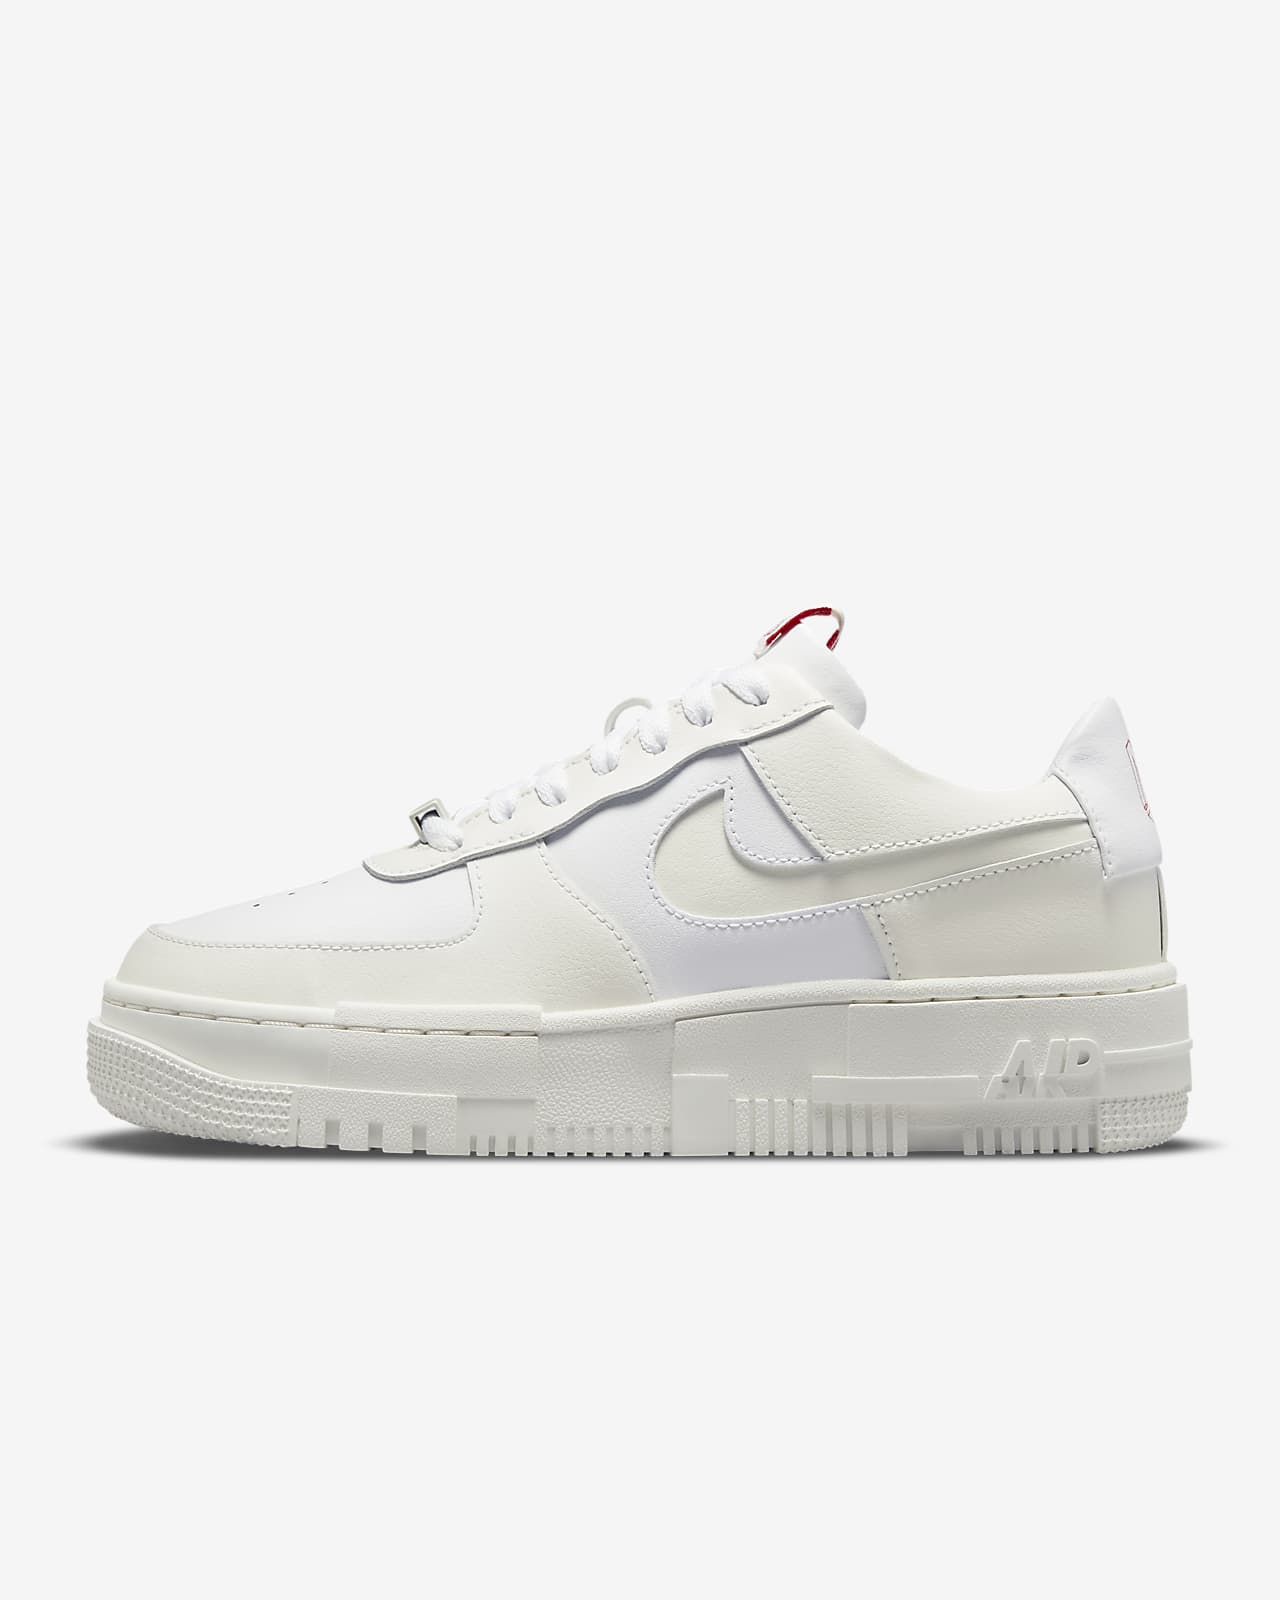 Nike Air Force 1 Pixel Women's Shoe